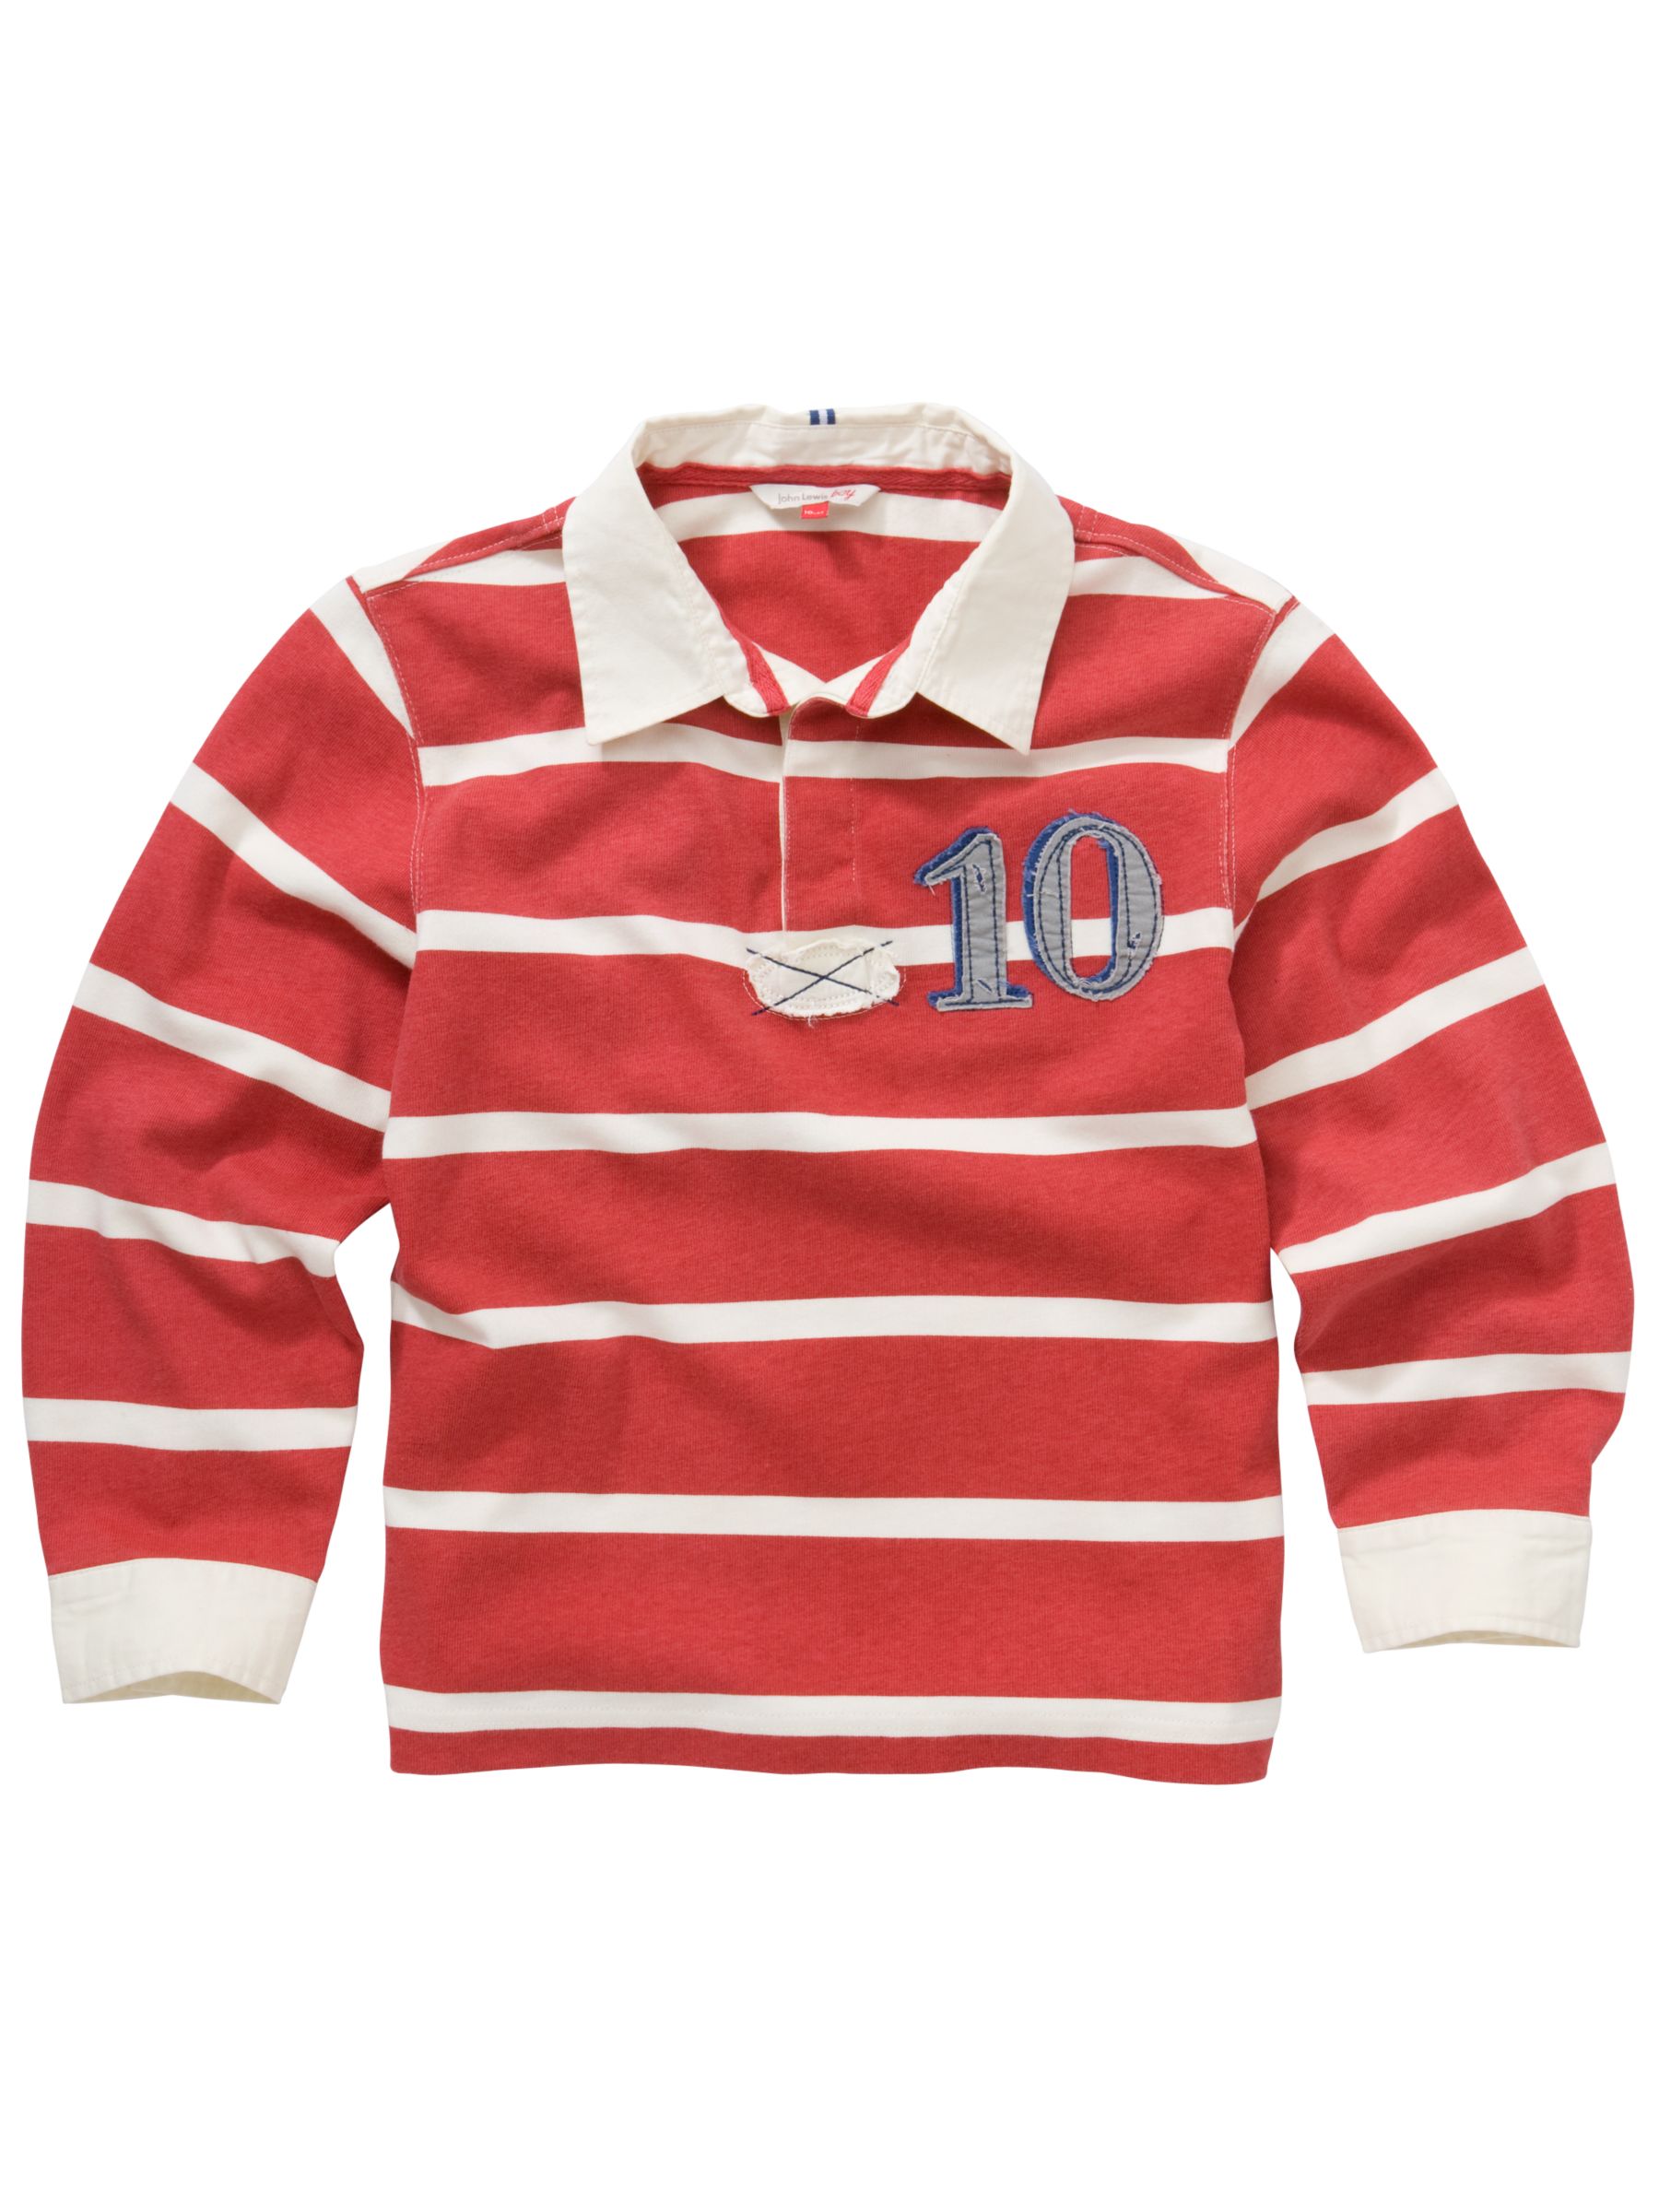 John Lewis Boy Stripe Rugby Shirt, Red/white, 12